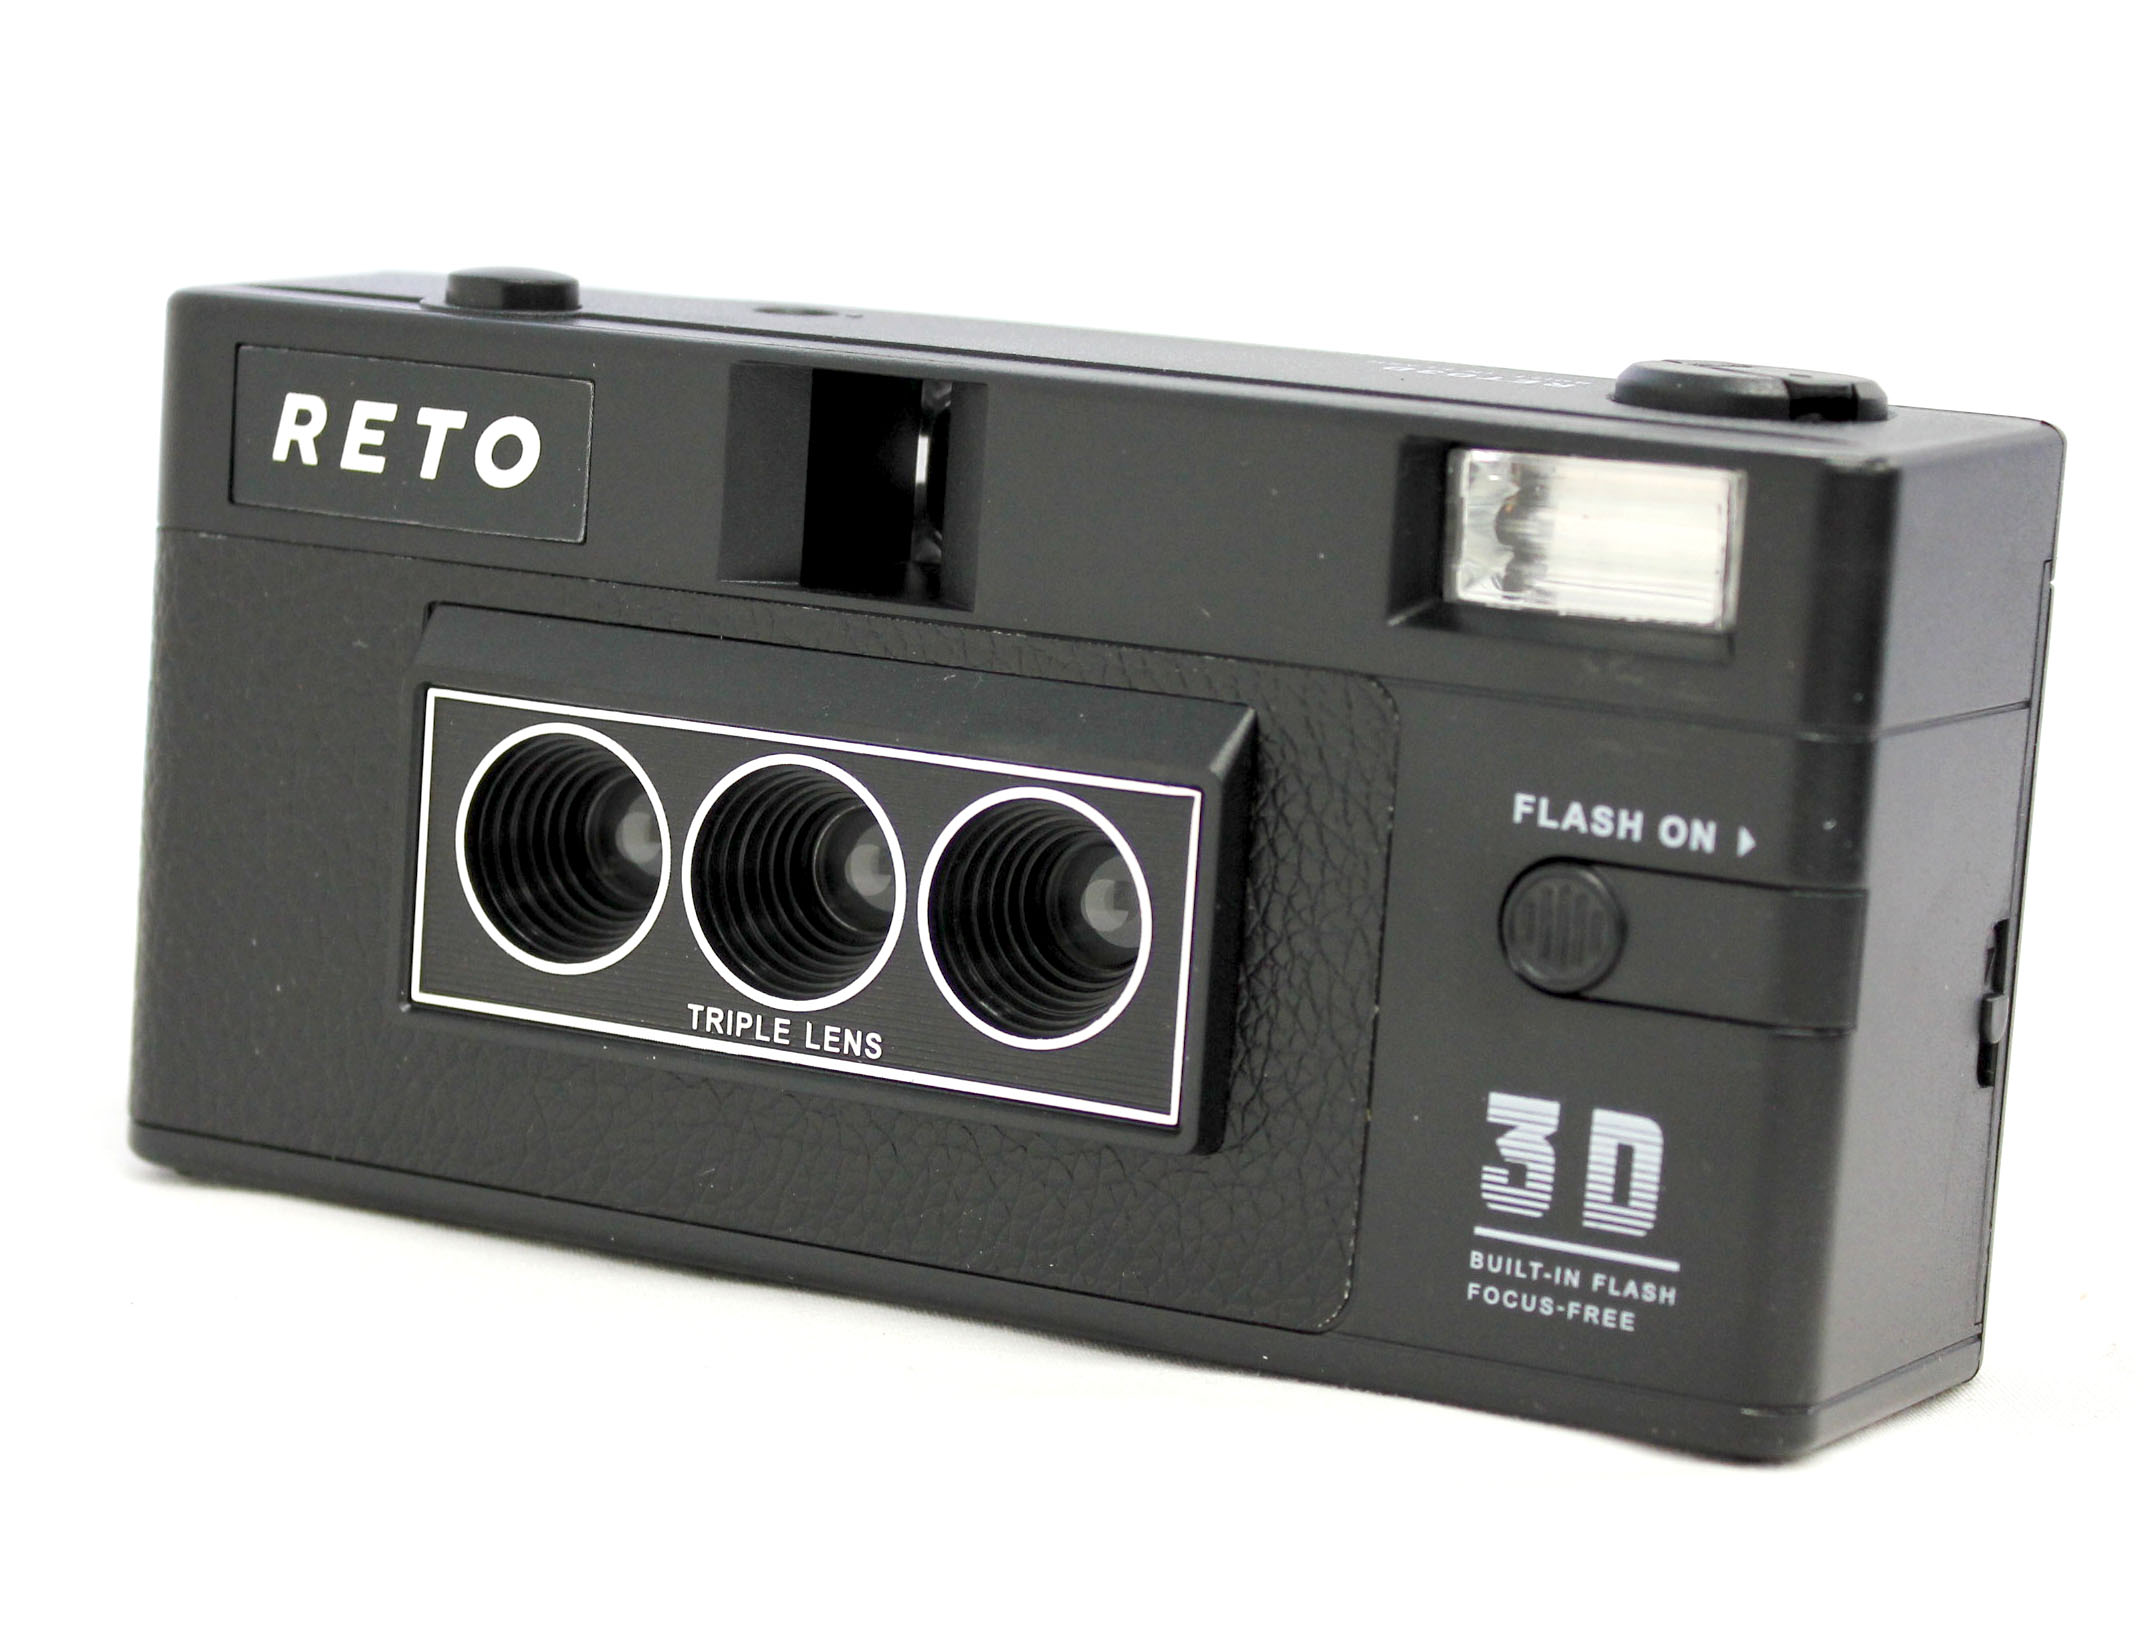 Reto 3D 35mm Film Camera Triple Lens similar Nishika N8000 from Japan Photo 1